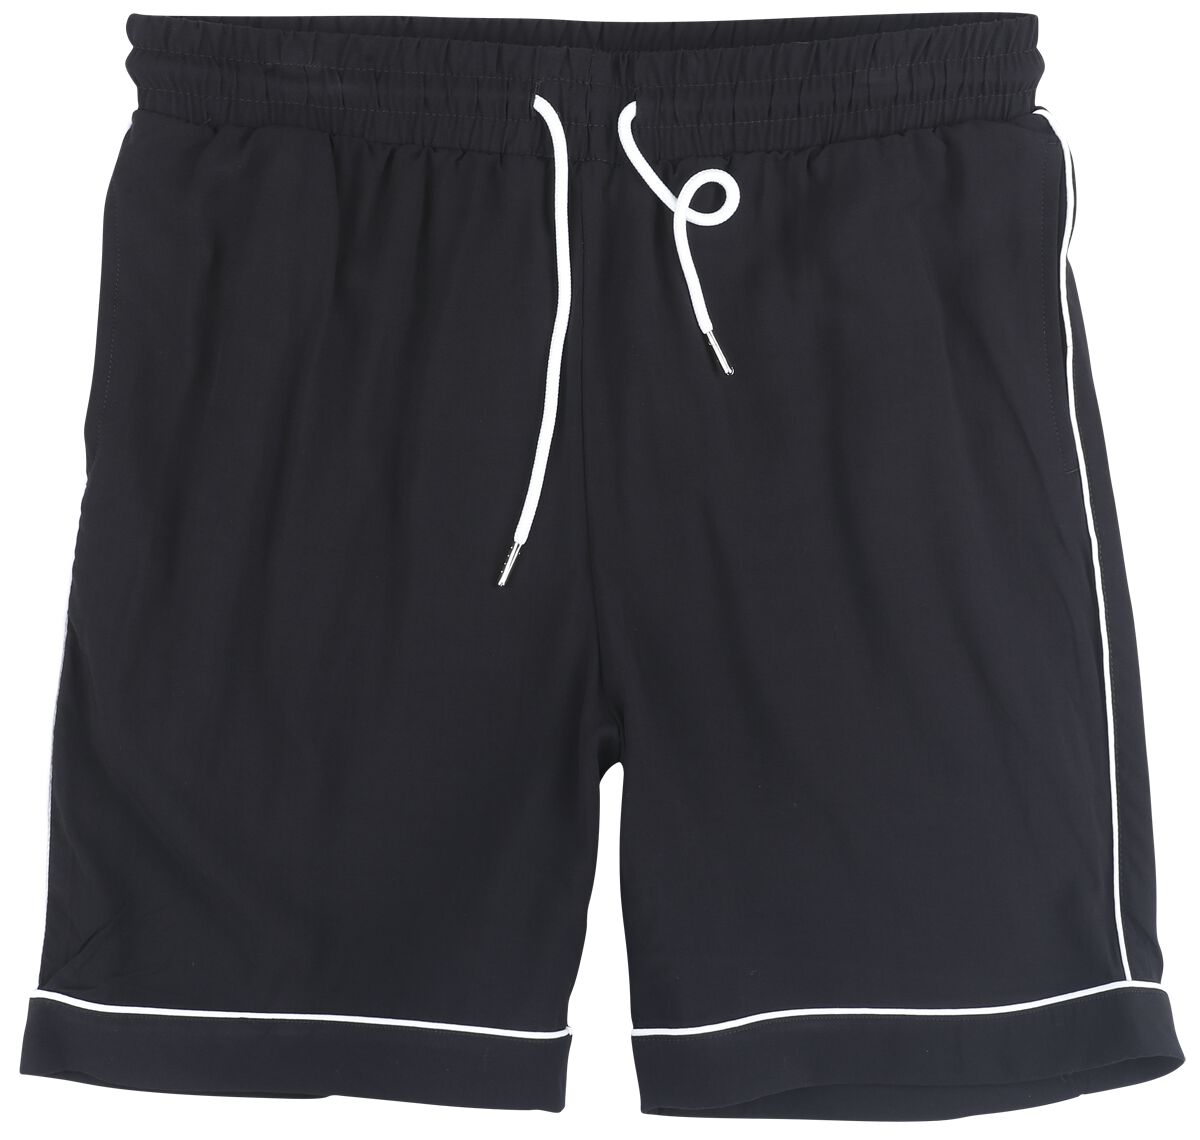 Urban Classics Short - Bowling Shorts - S bis 3XL - für Männer - Größe XXL - schwarz